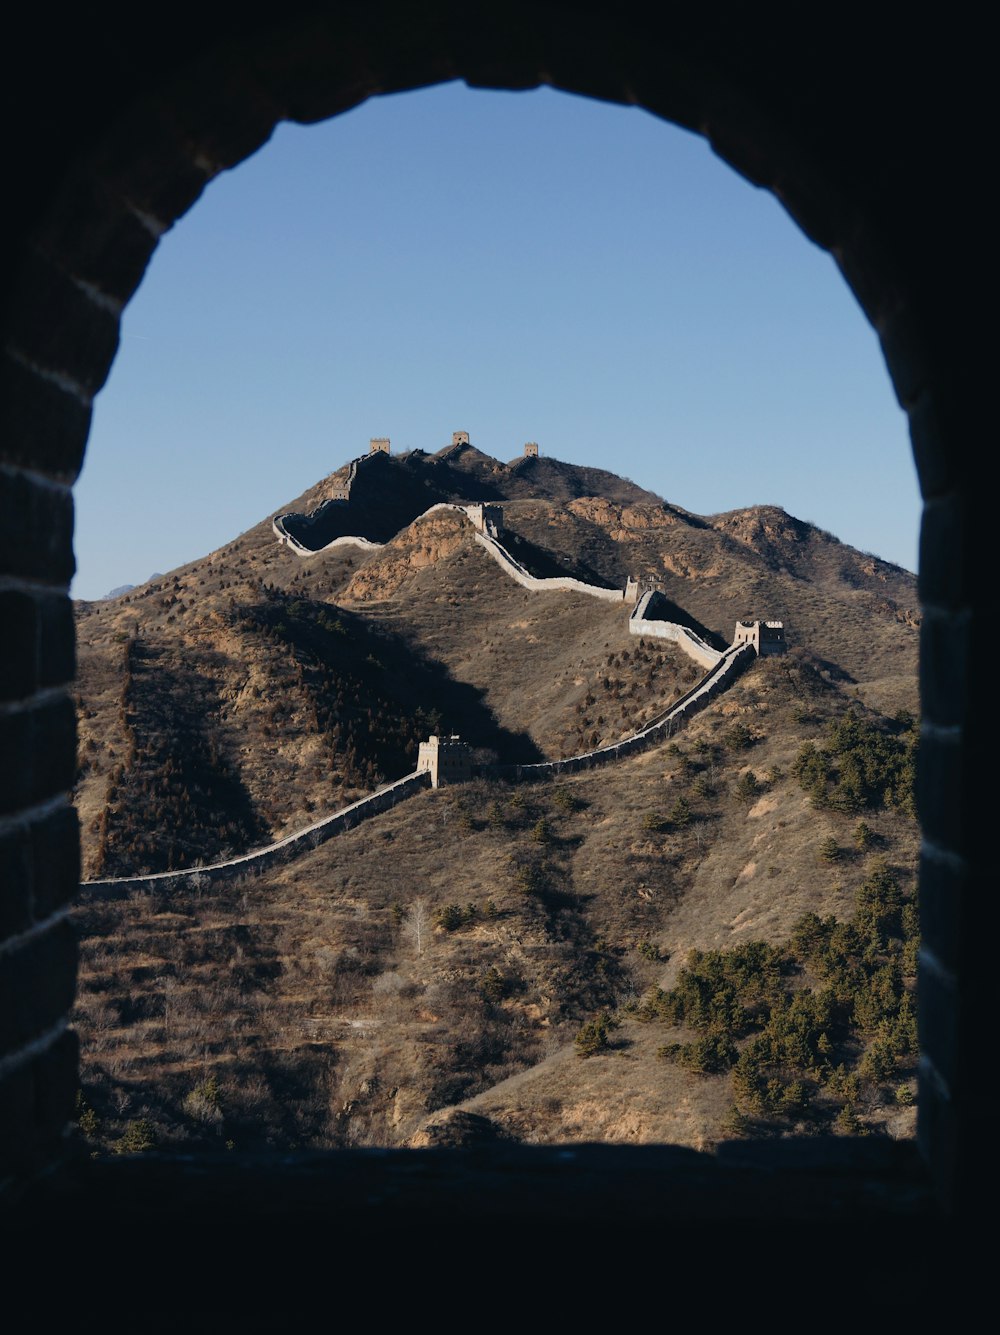 La Grande Muraille de Chine